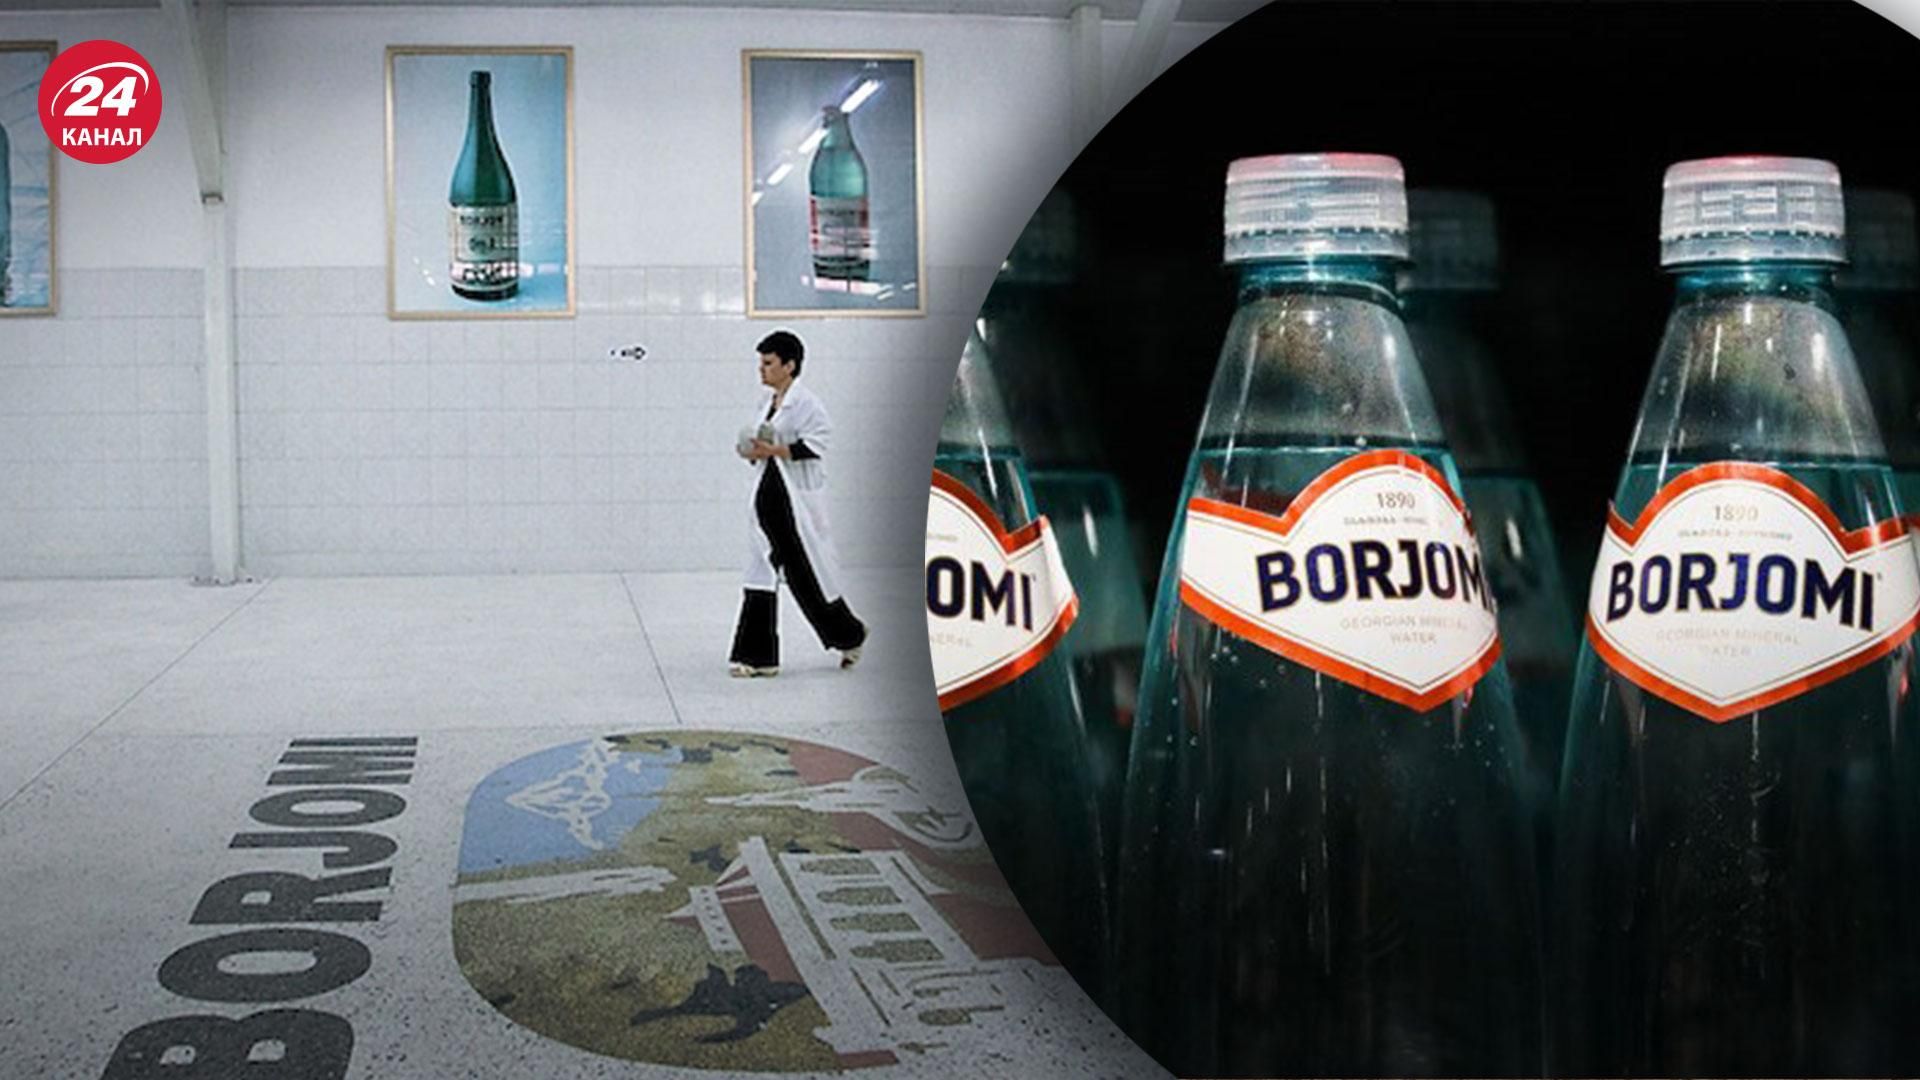 Поздно пить Borjomi  грузинская компания приостанавливает производство воды из-за санкций - Бизнес